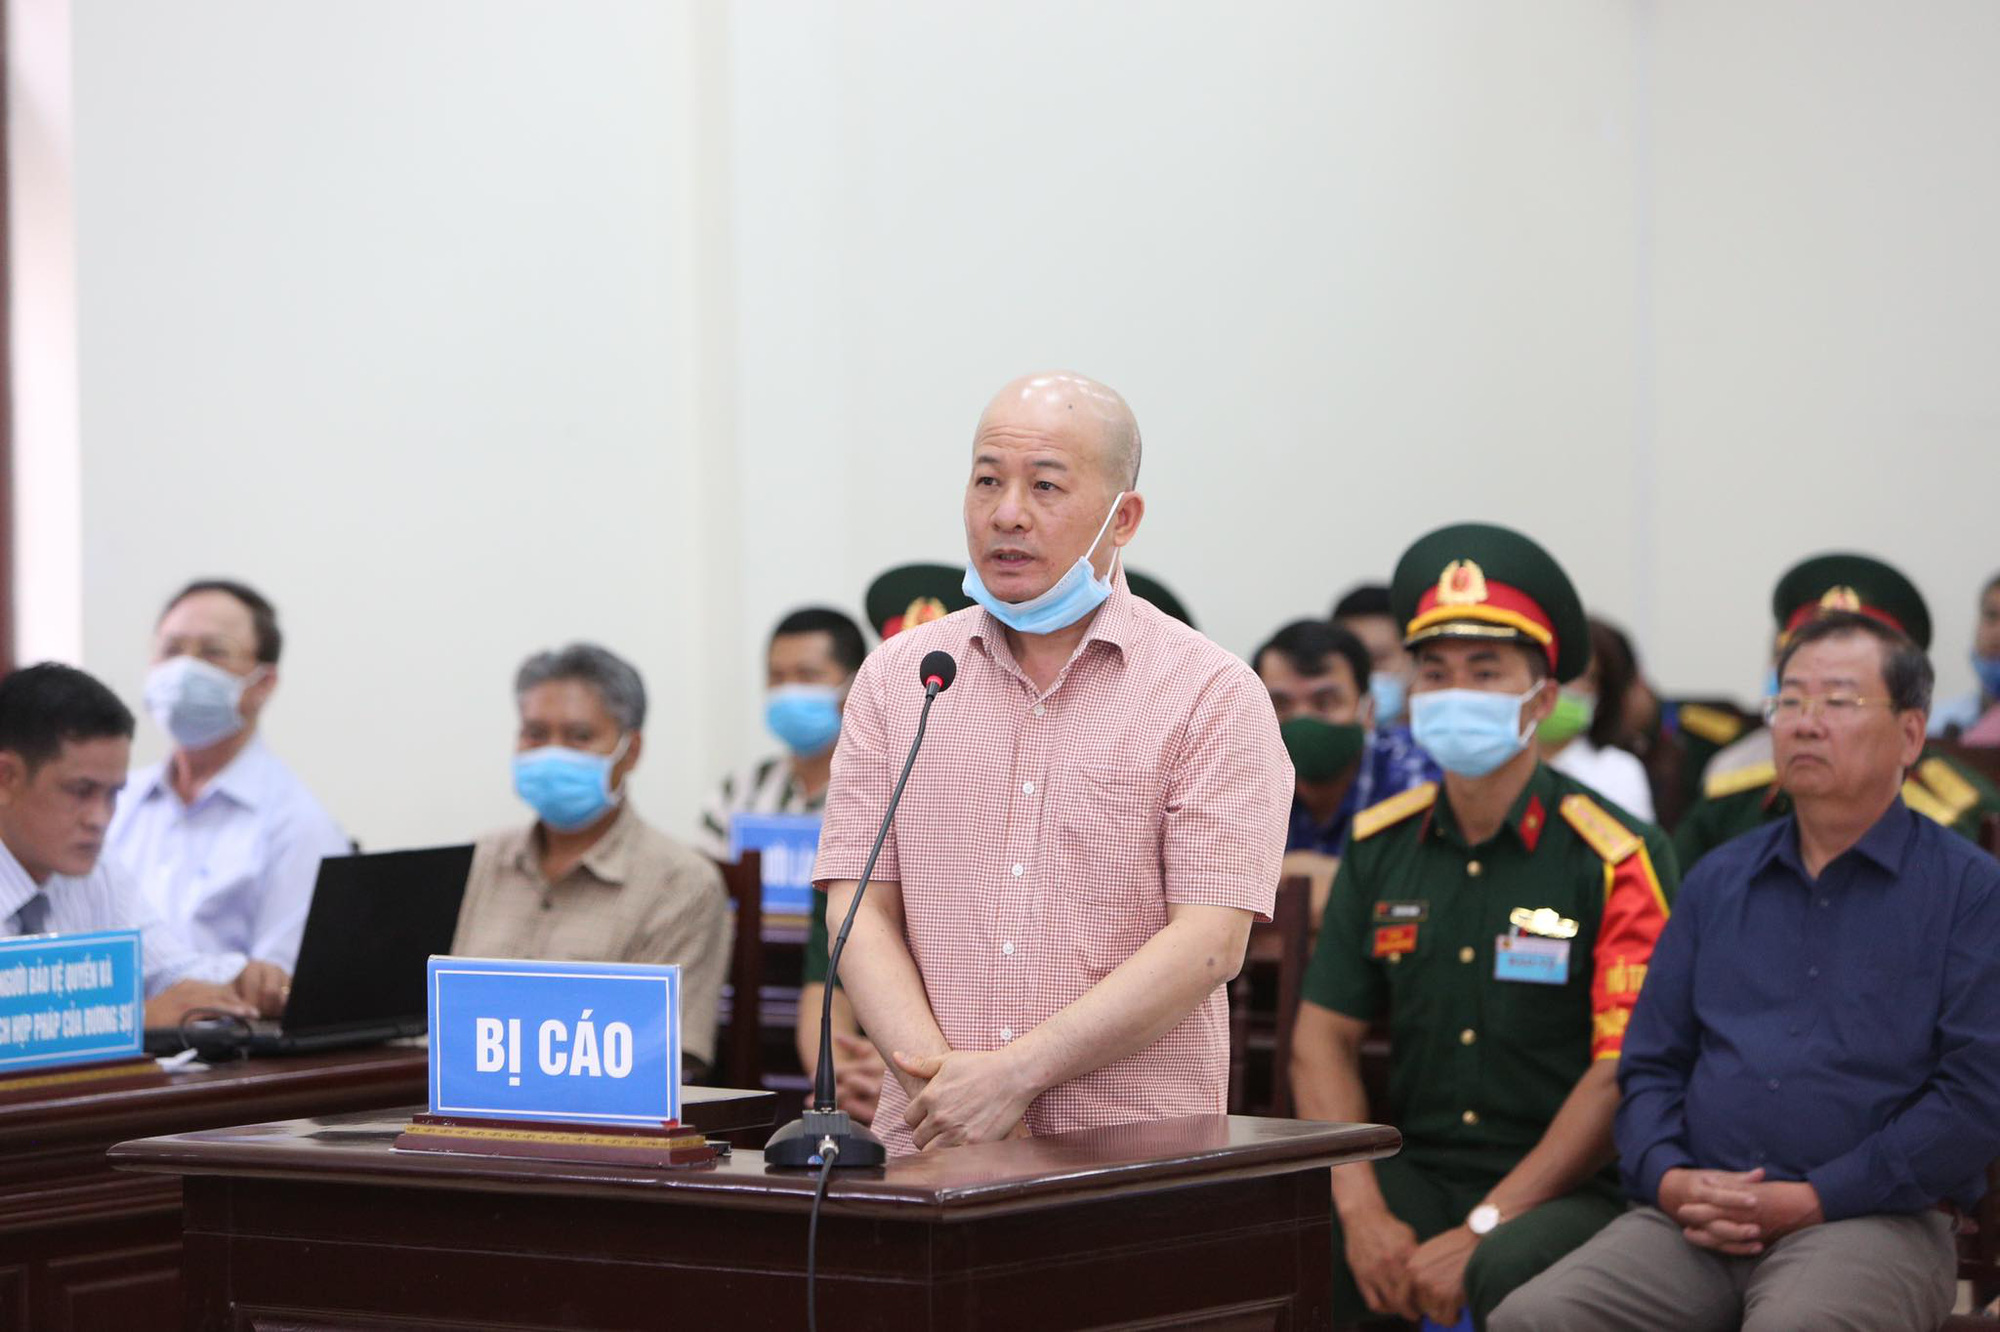 Cựu Thứ trưởng Bộ Quốc phòng Nguyễn Văn Hiến sức khỏe yếu được ngồi khai báo - Ảnh 2.